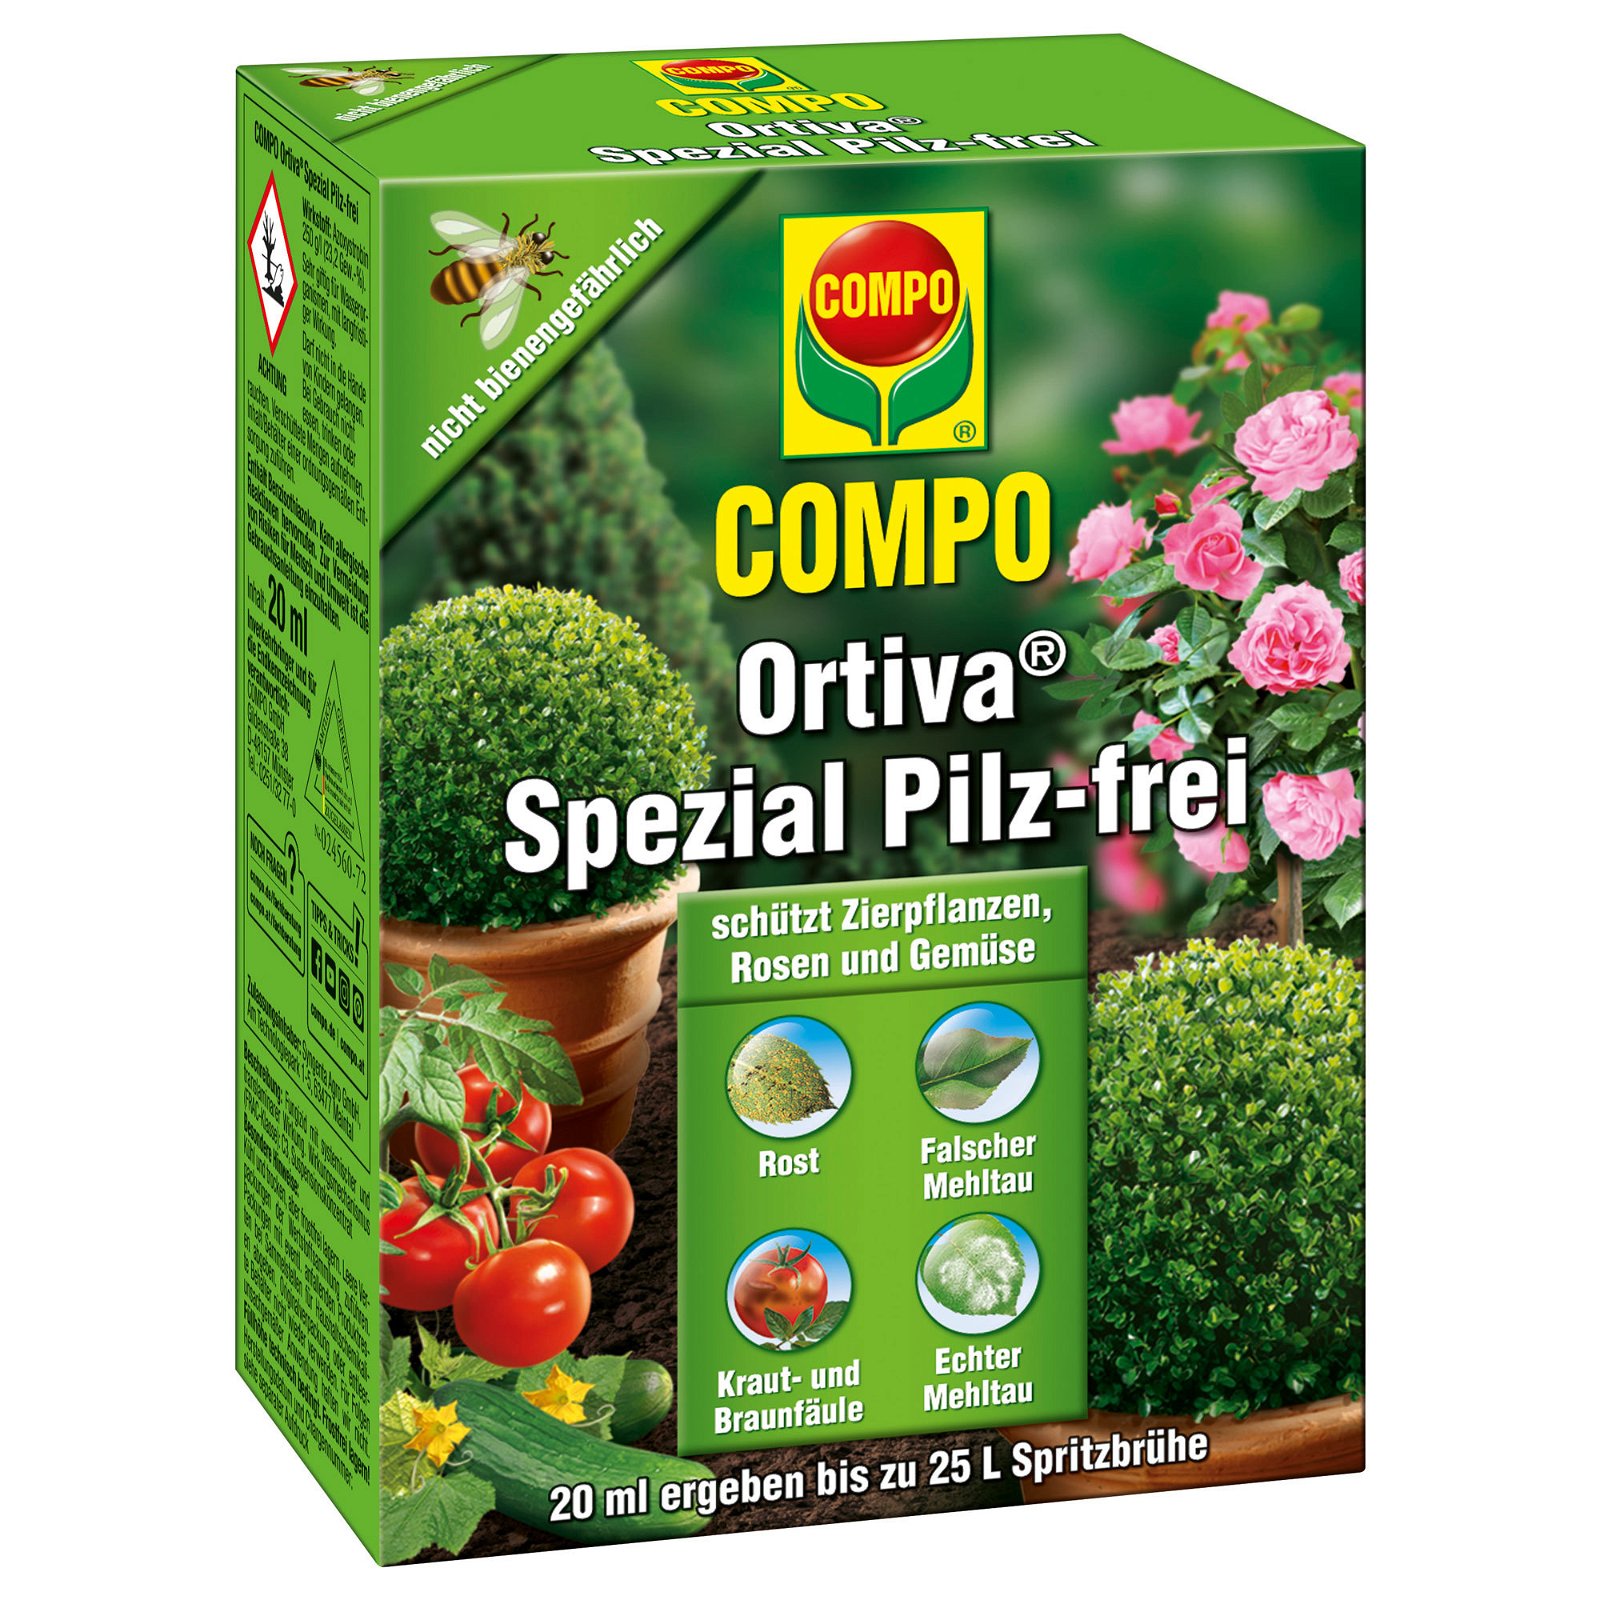 Compo Ortiva Spezial Pilzfrei, 20 ml